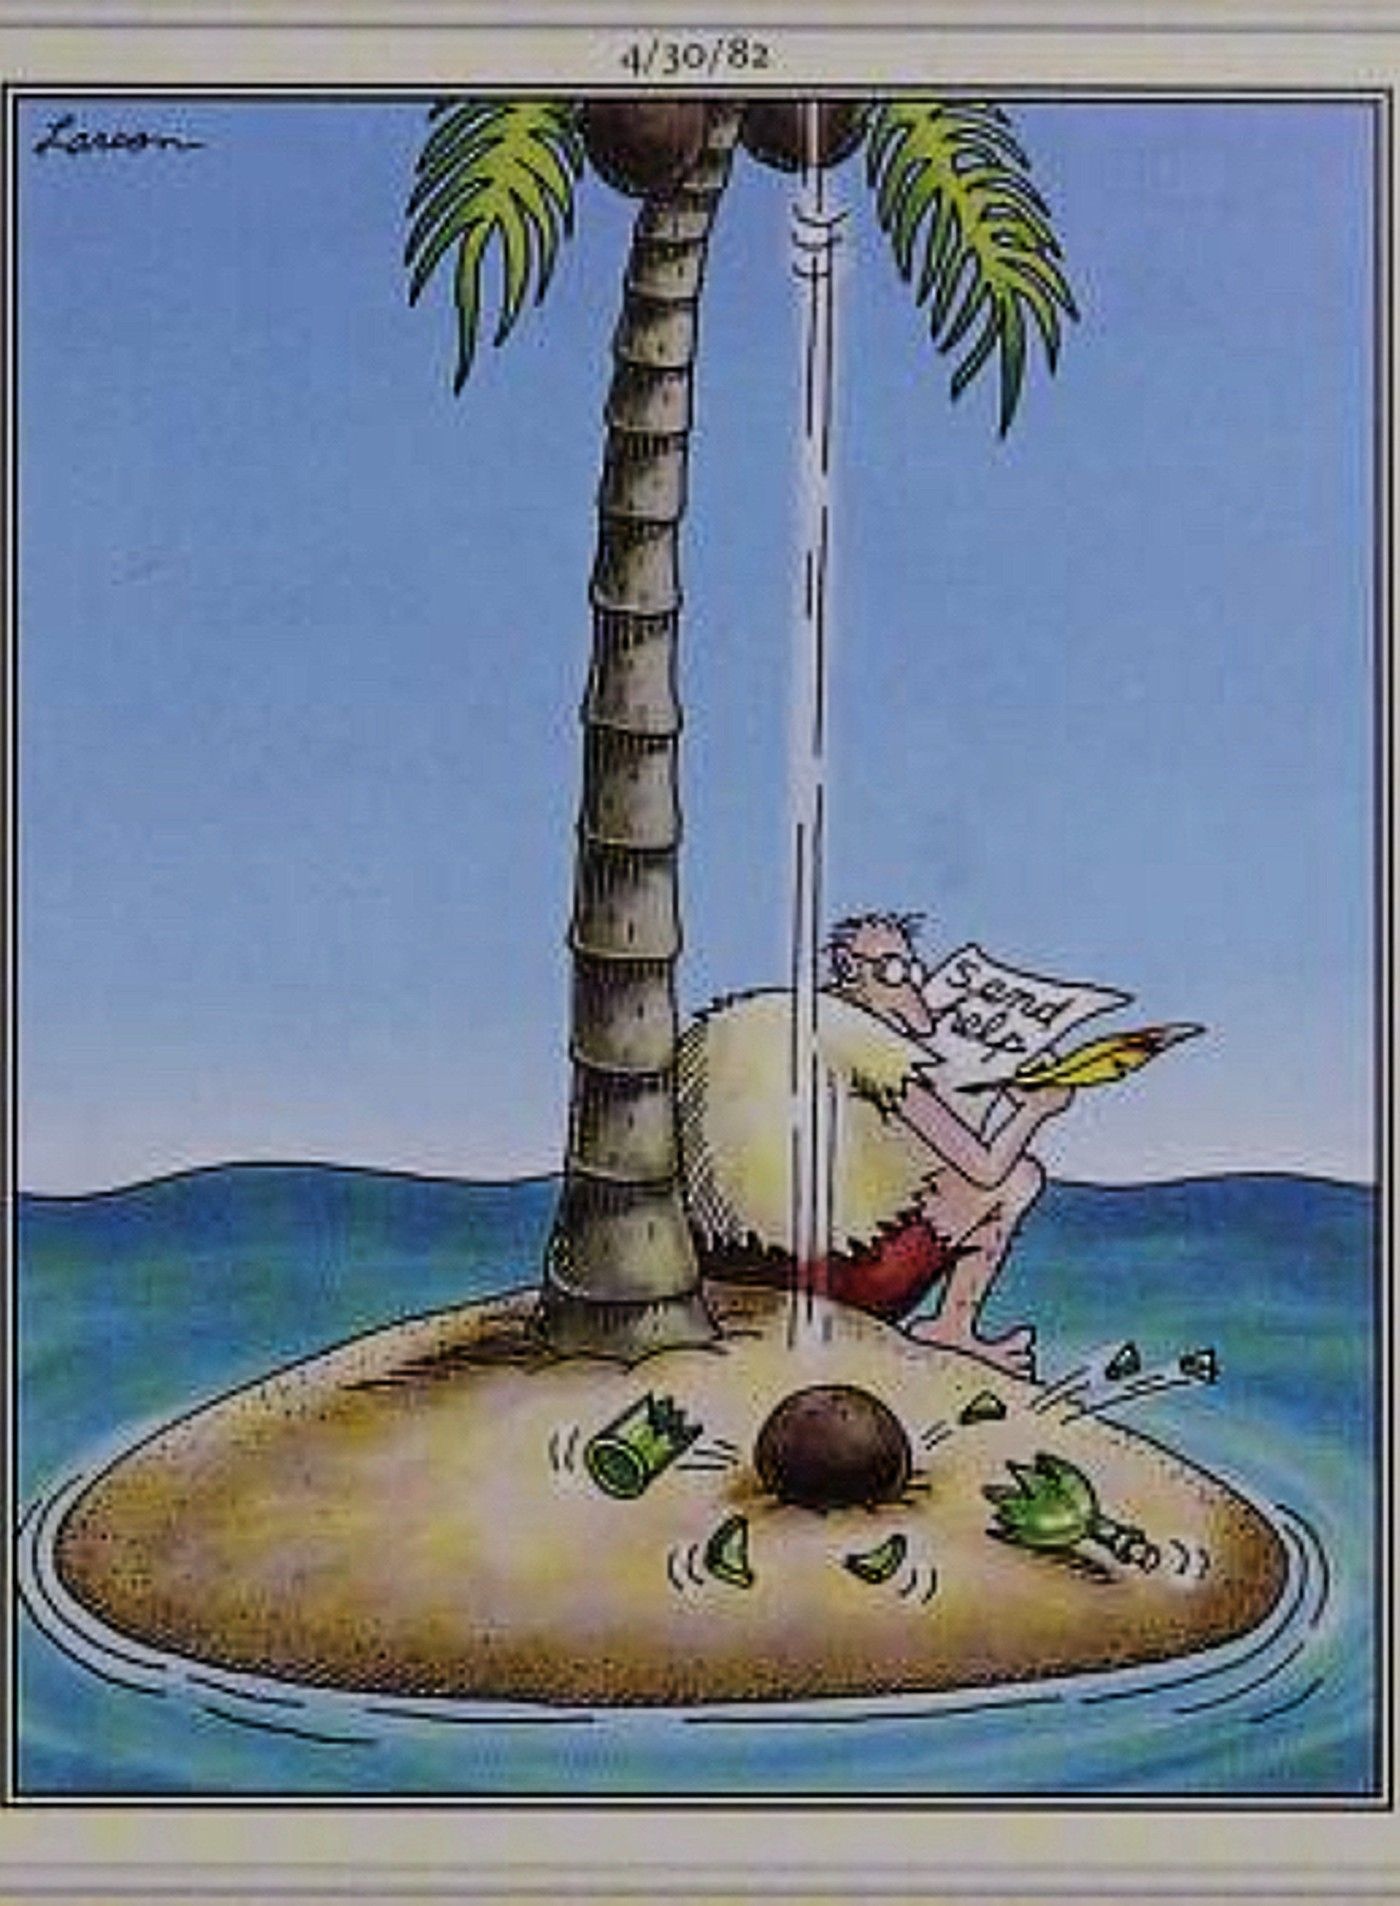 Do outro lado, coco cai da árvore e quebra a garrafa antes que o homem na ilha deserta possa terminar de escrever o bilhete